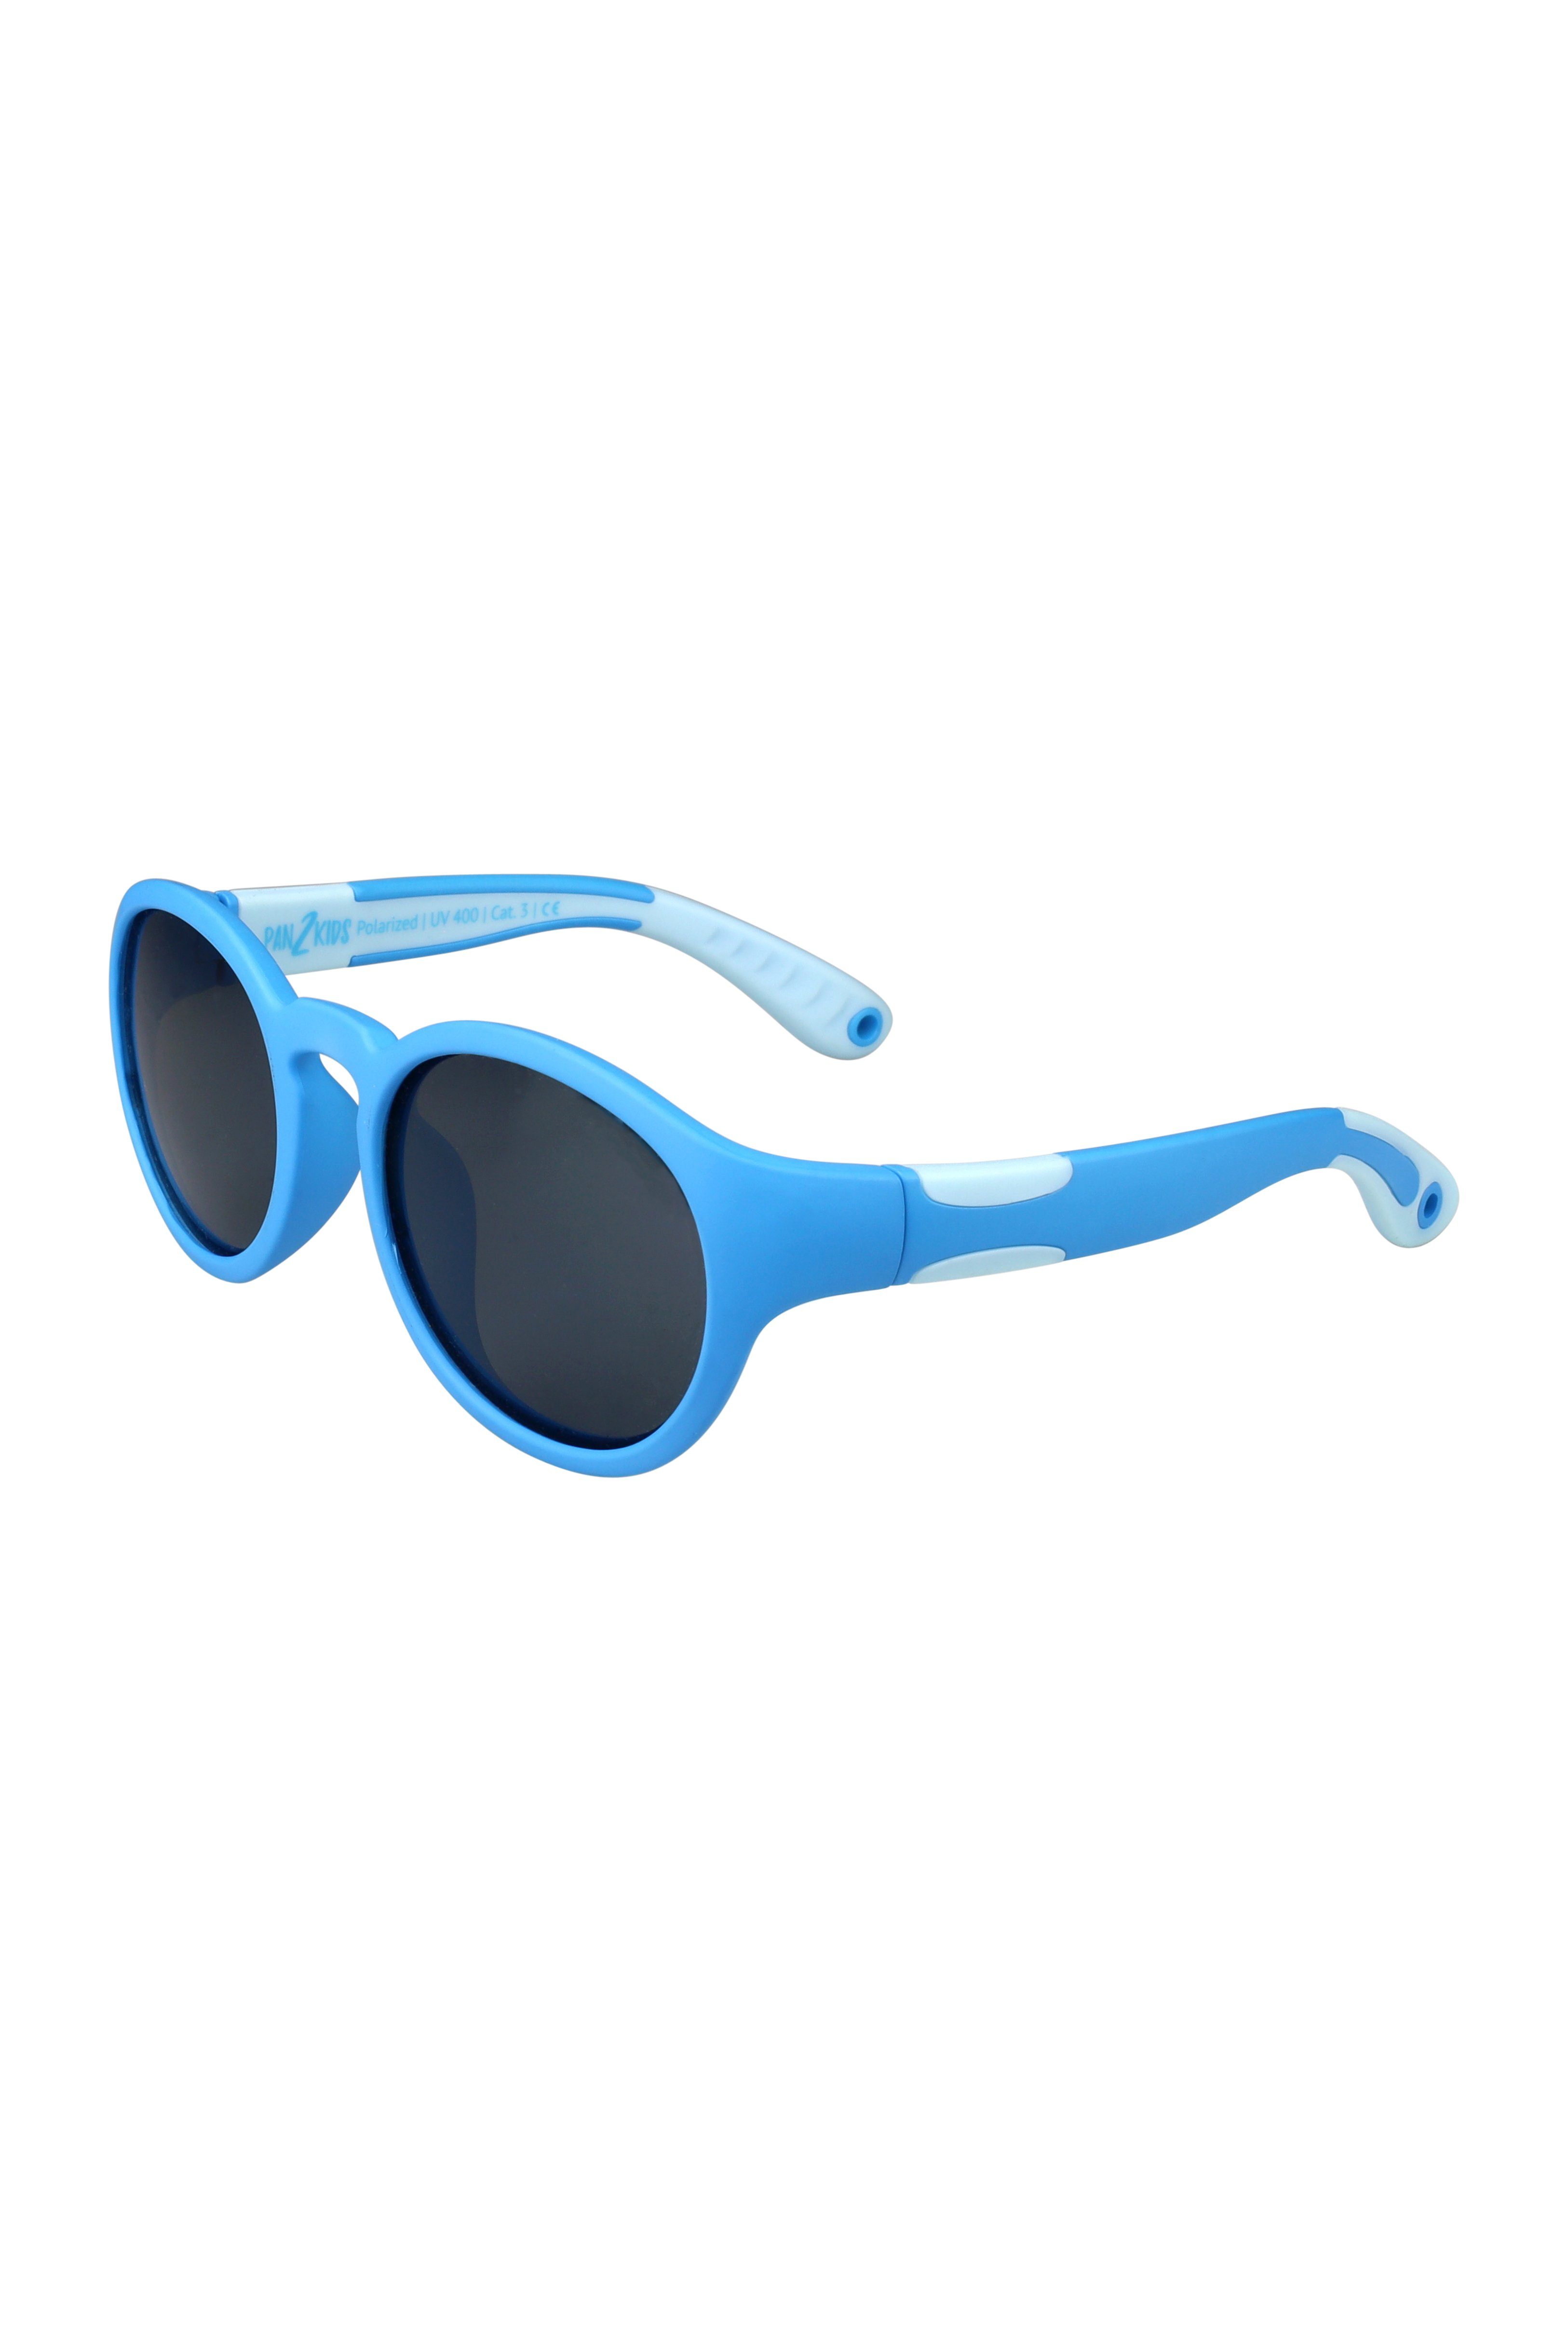 ActiveSol SUNGLASSES Sonnenbrille 2 für Kinder Blue - Panto – Pan2Kids, Jahre, 5 Tranquil Design, polarisiert